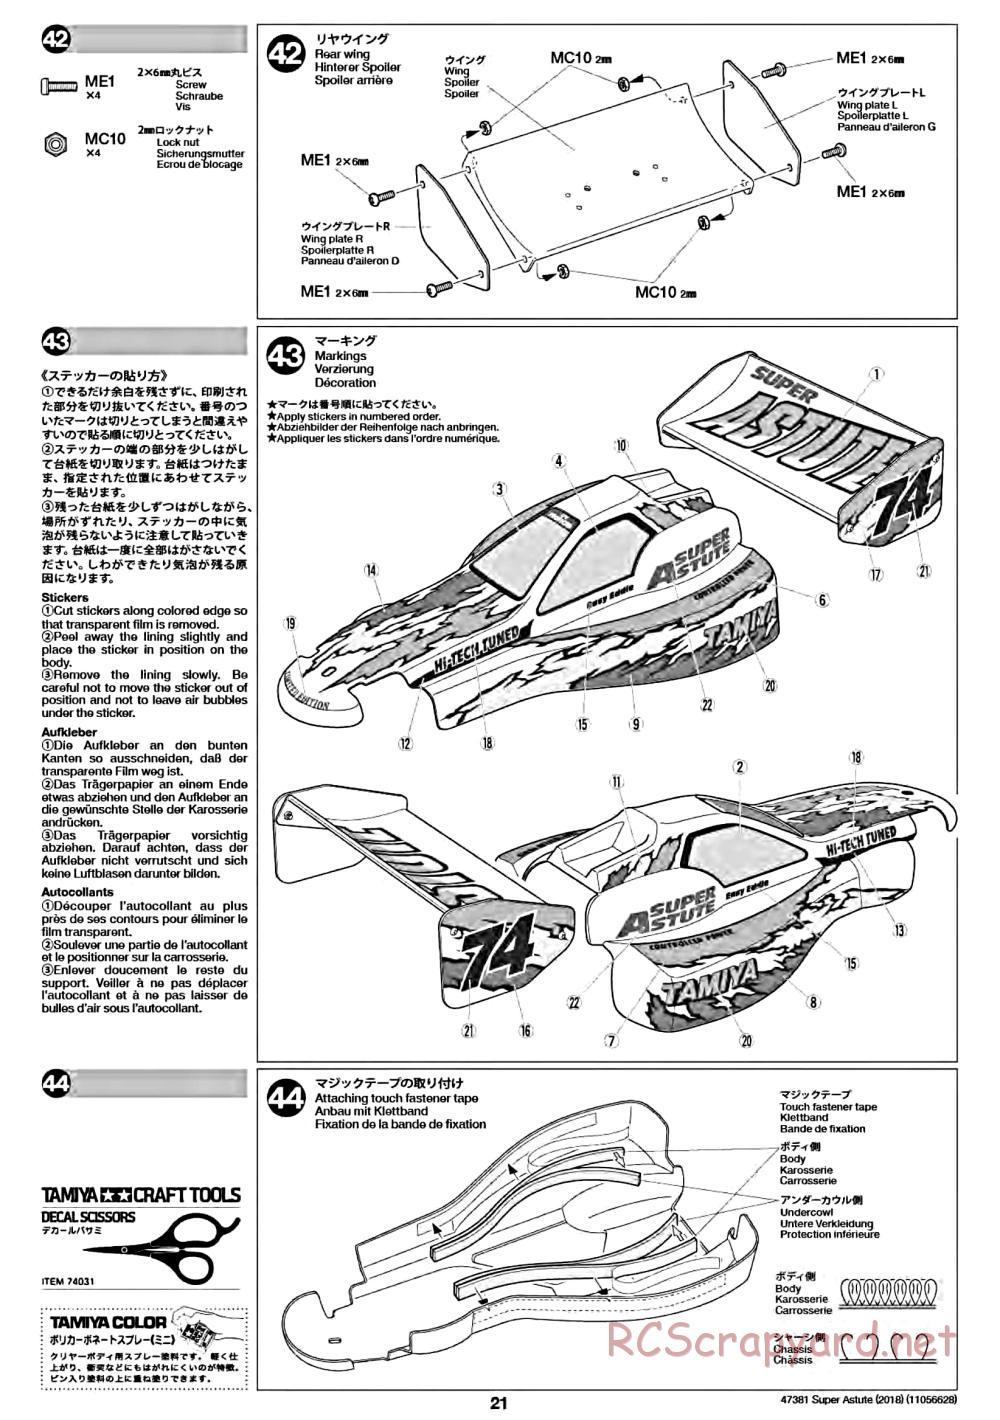 Tamiya - Super Astute (2018) Chassis - Manual - Page 21